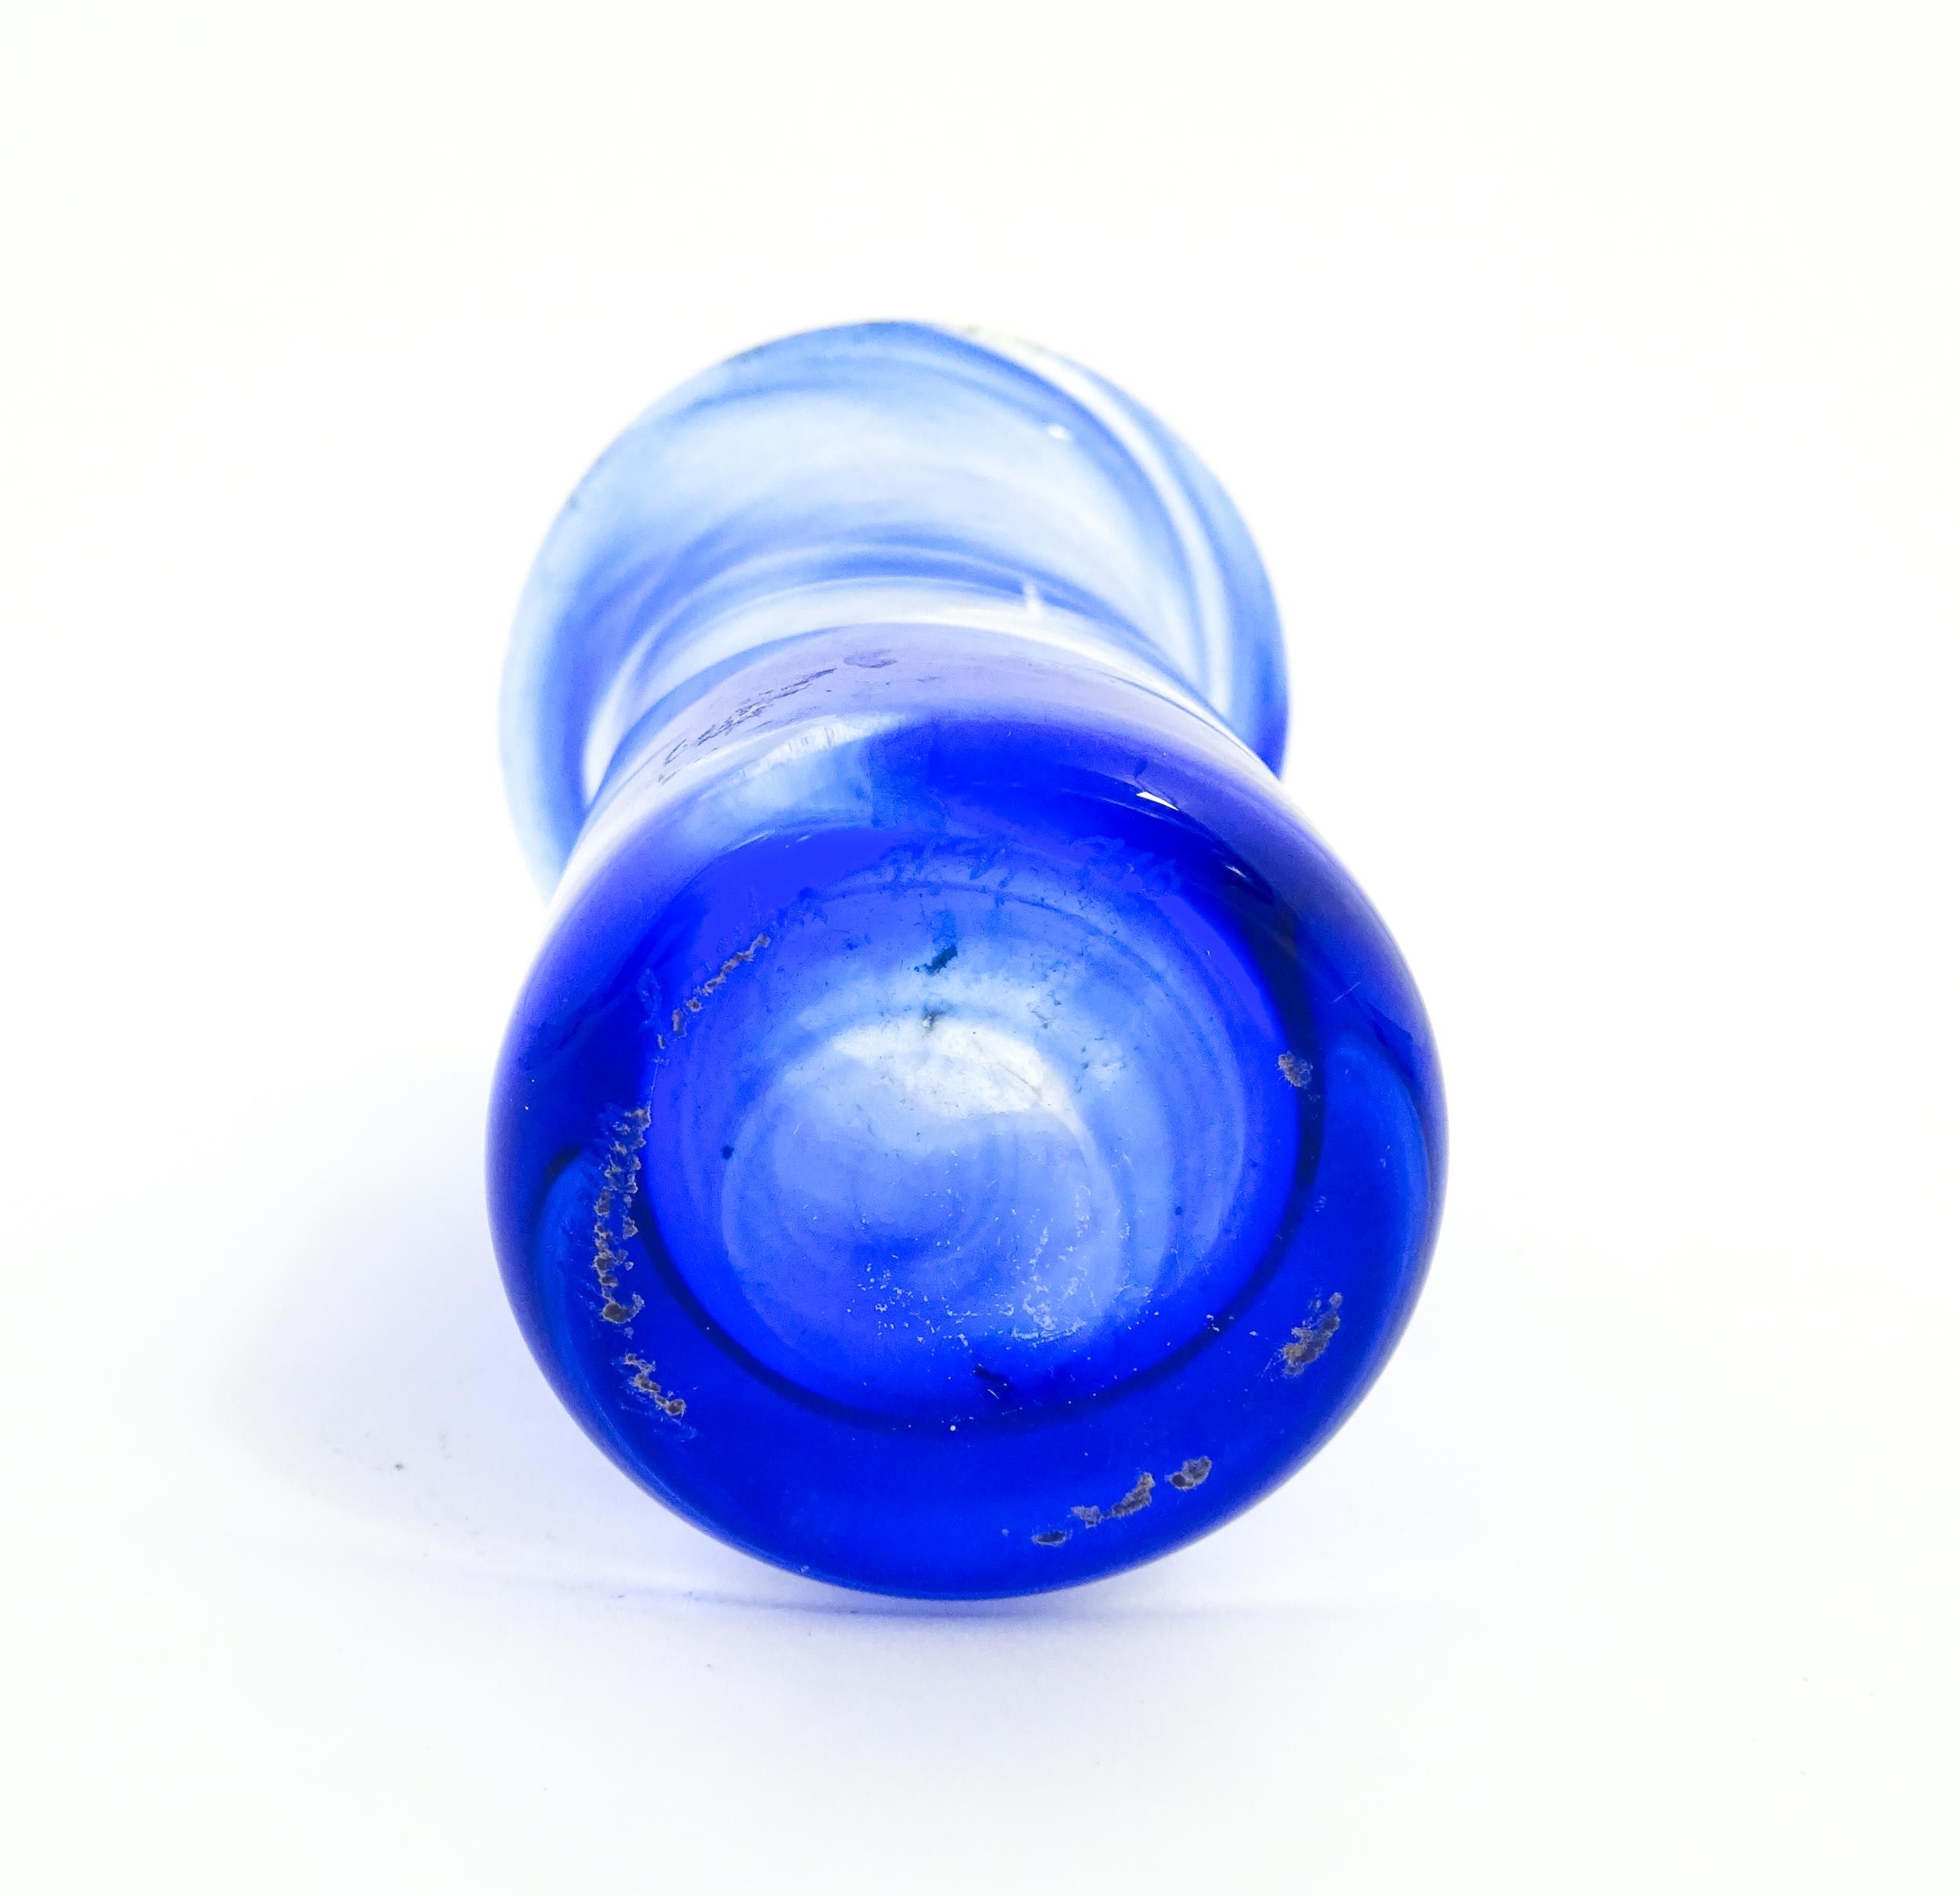 A Swedish Vas Vitreum blue glass vase with flared rim, signed under Vas Vitreum Sweden. Approx. 4 - Image 2 of 6